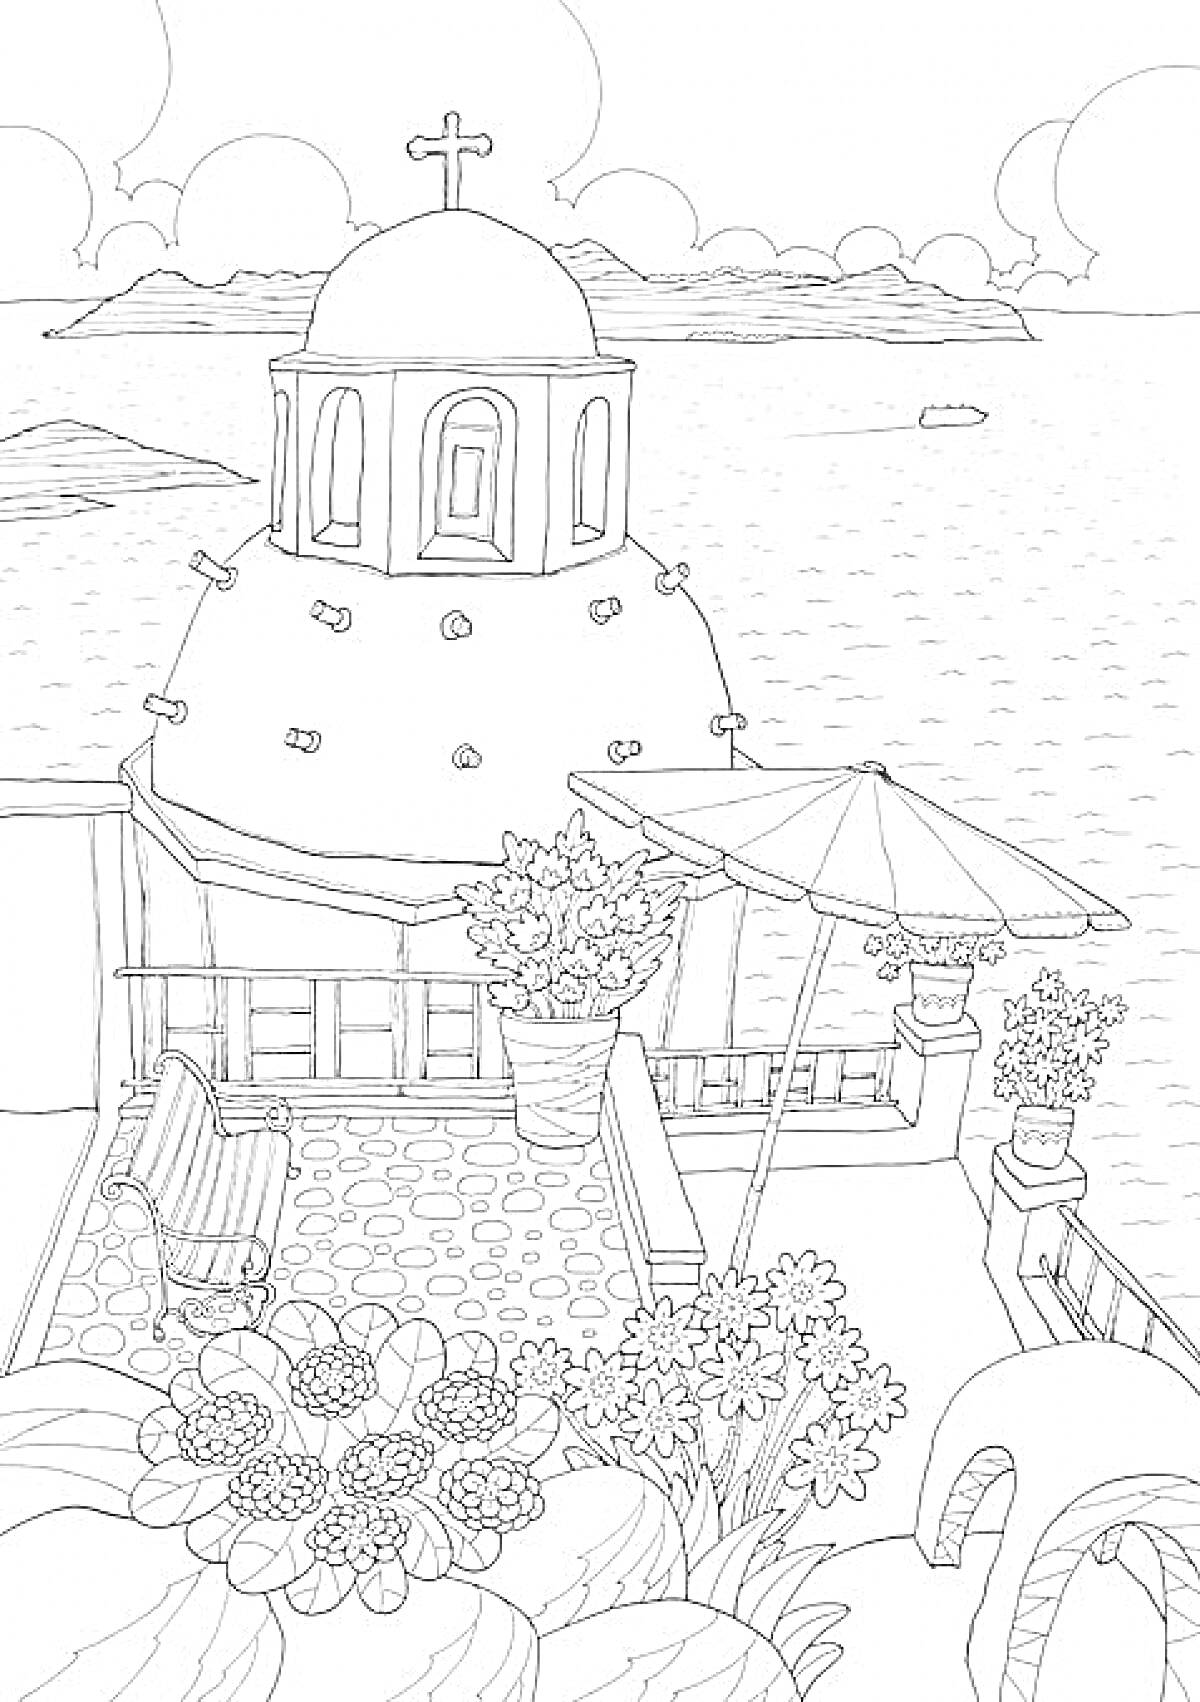 Раскраска Виды с террасы на побережье: купол с крестом, море, лодка, цветы в горшках, зонтик, скамейка, арочные элементы, облака на небе.